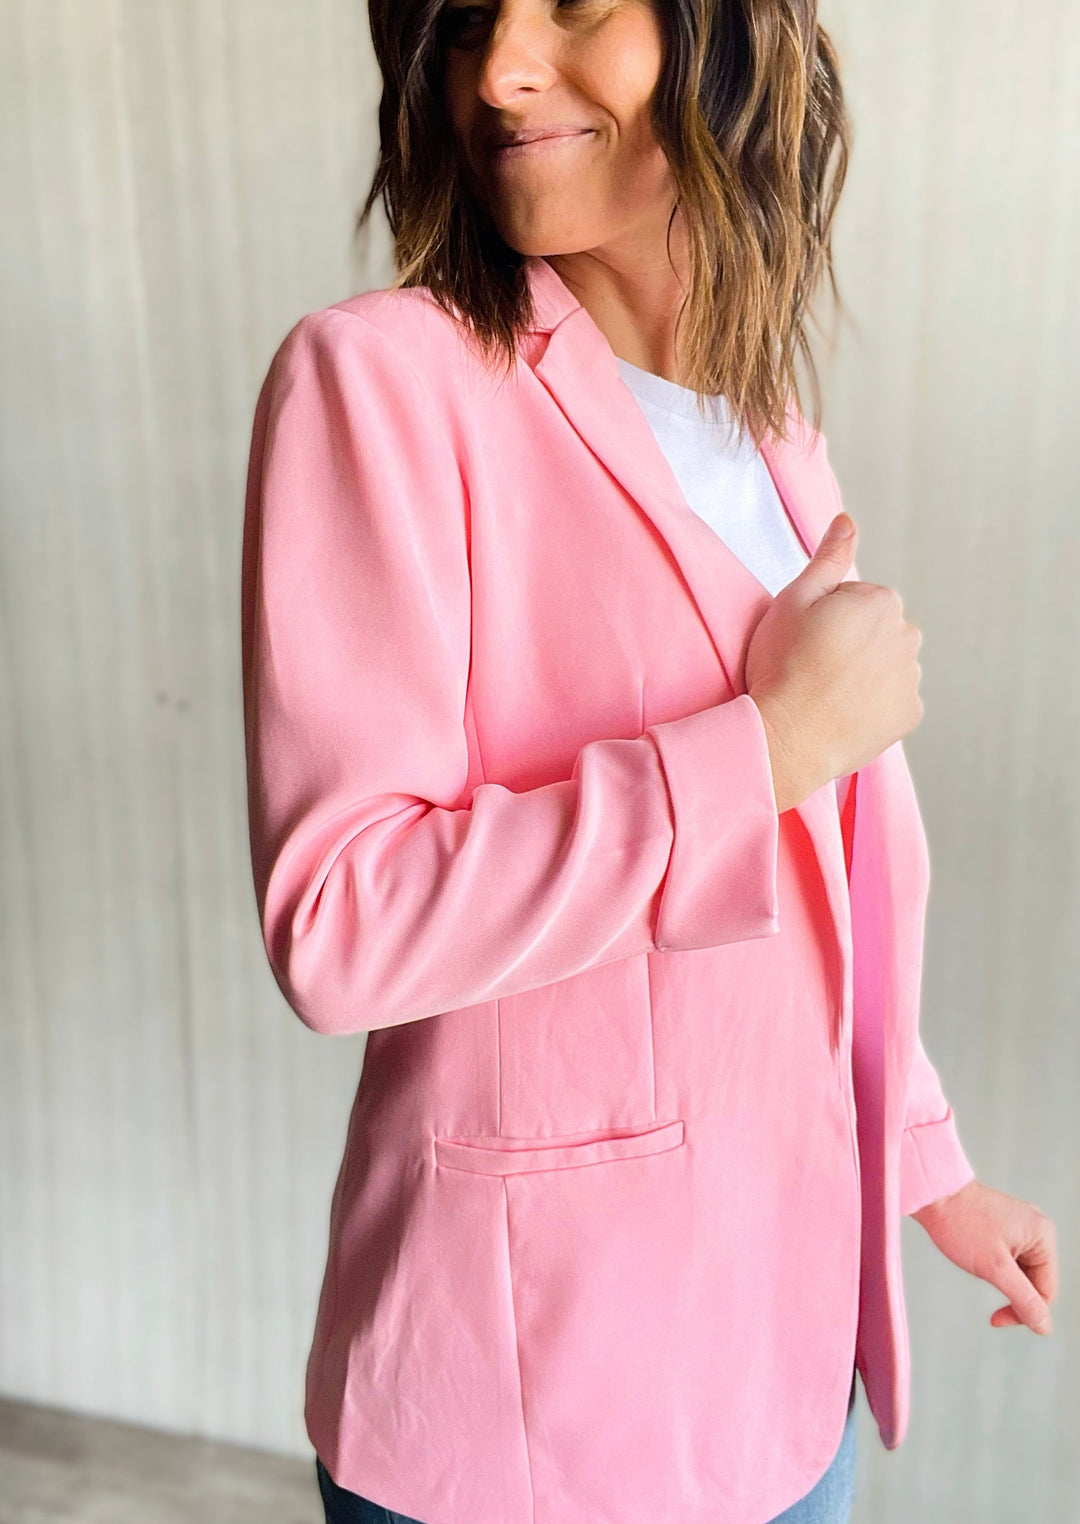 Women's Pink Blazer